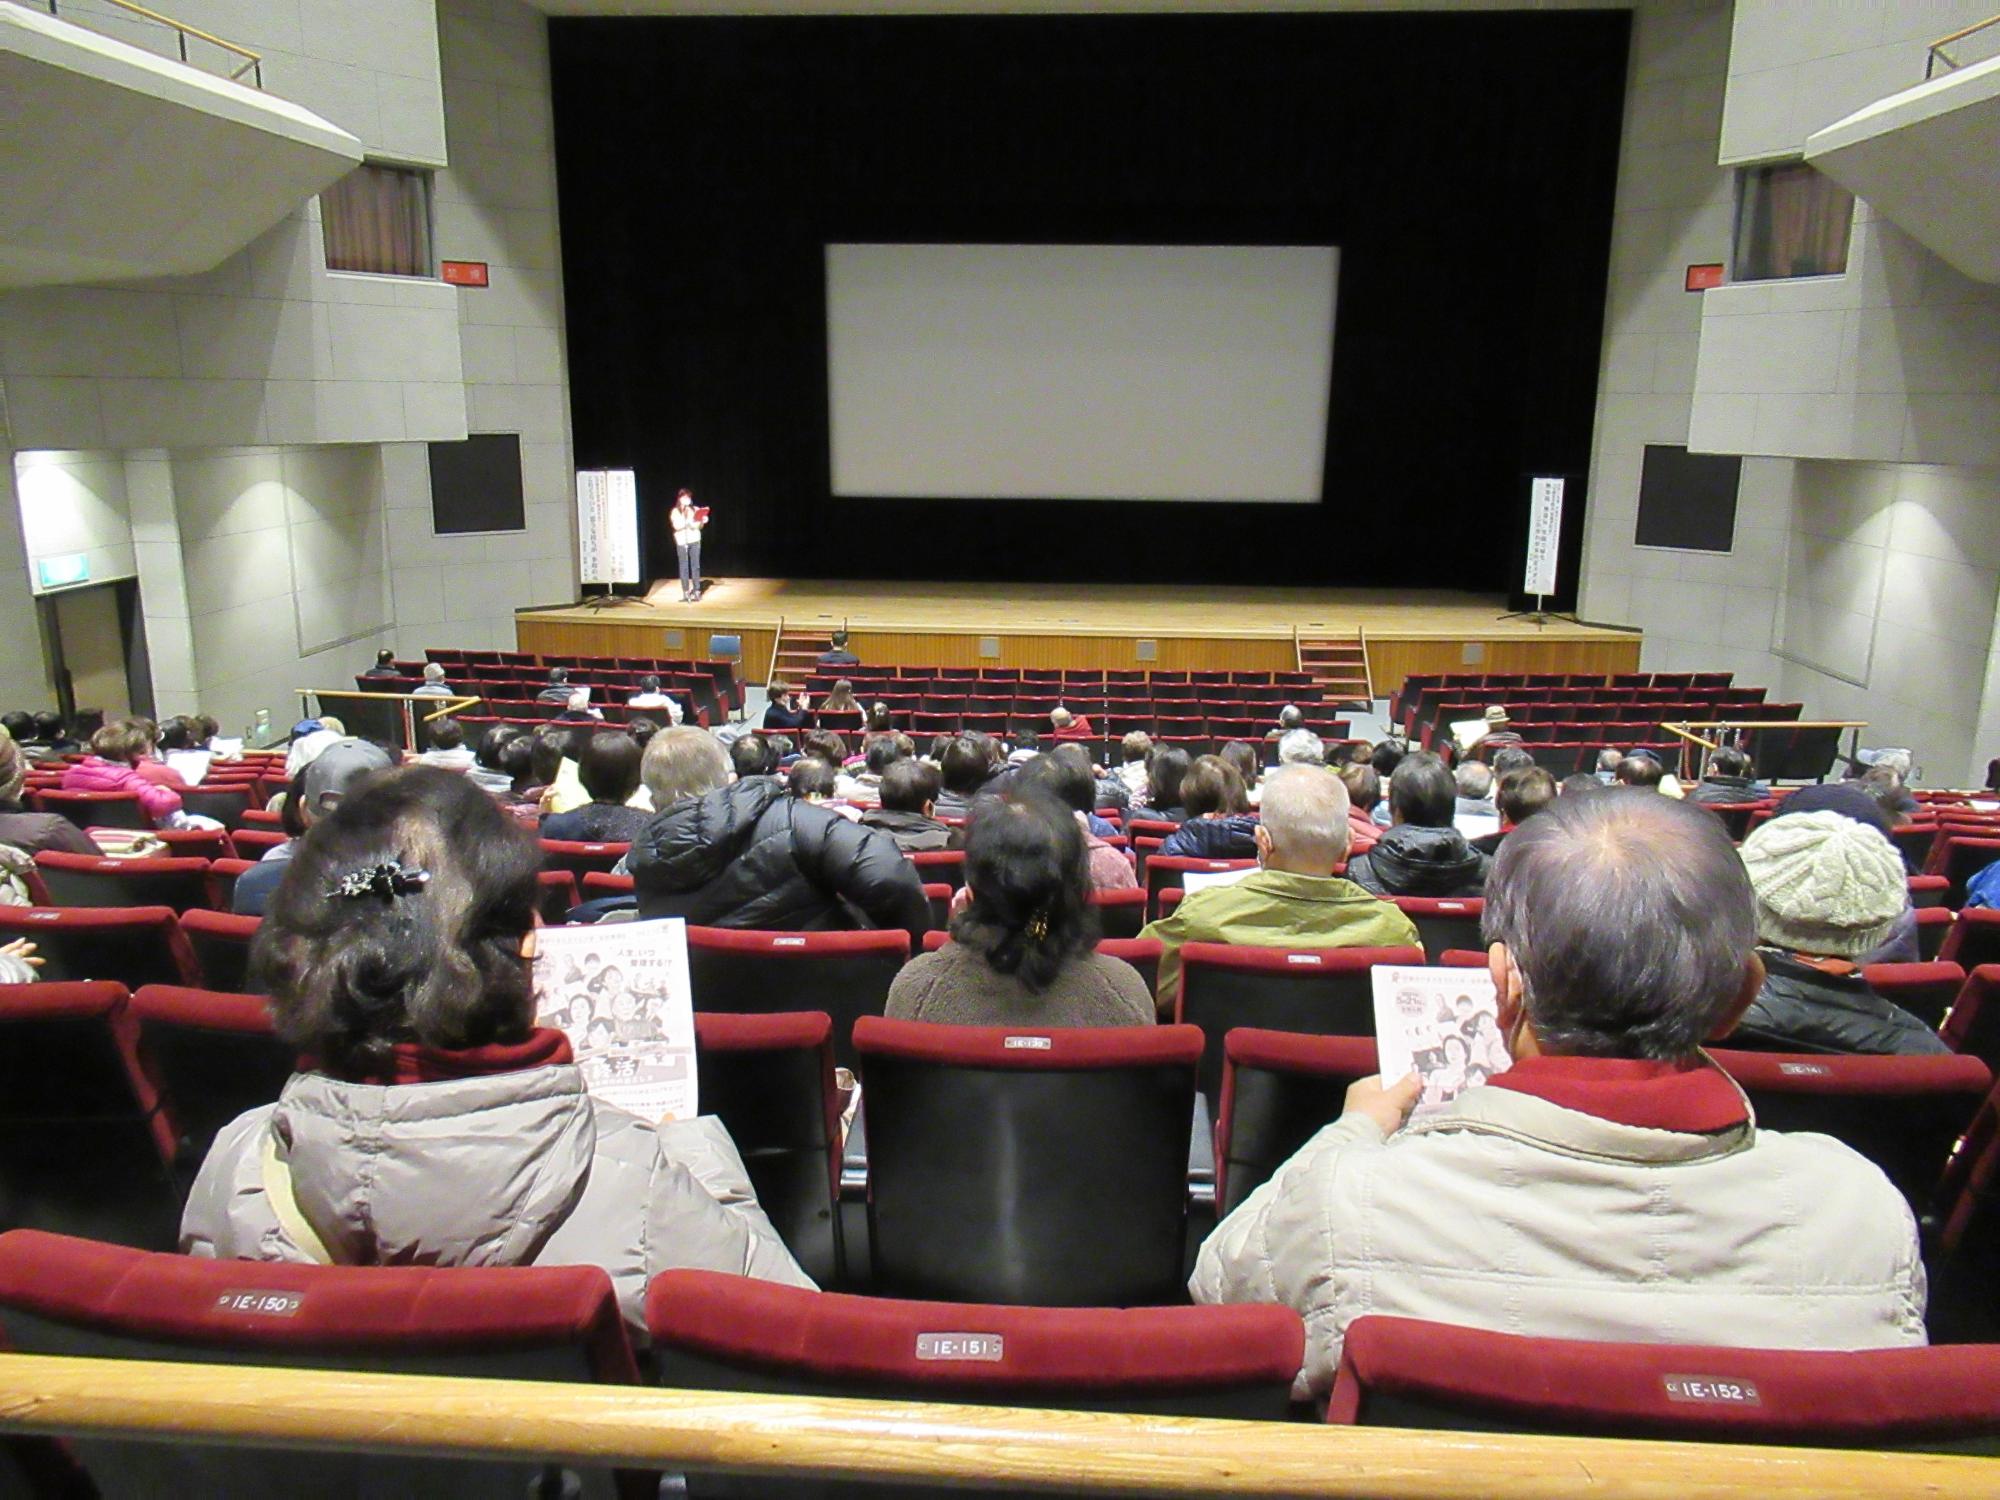 一般教養講座で映画鑑賞をみにきている学生の会場の写真